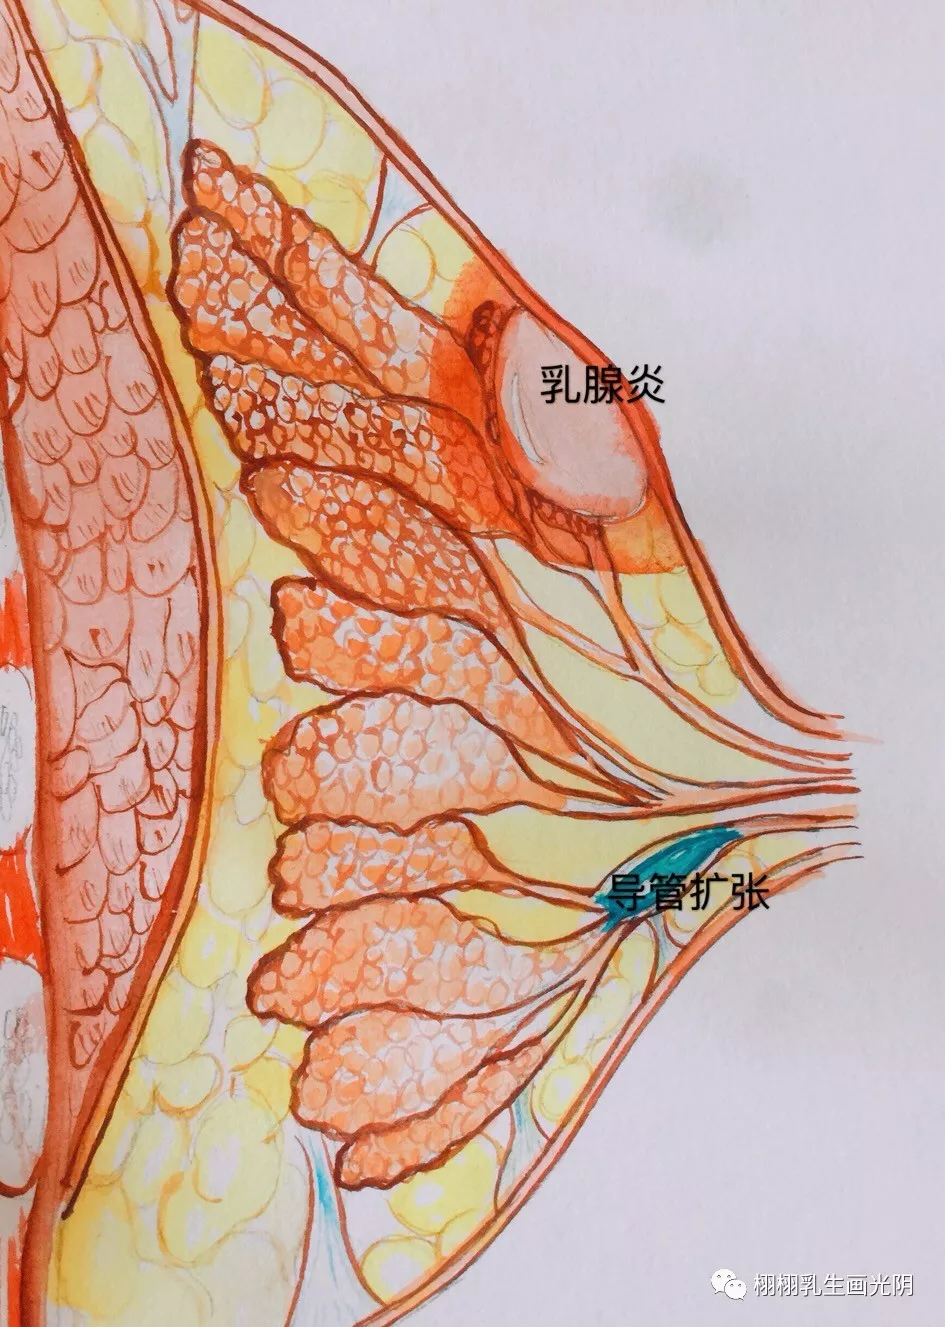 乳腺导管扩张: 又叫粉刺样乳腺炎,有的是因为乳头内陷,藏污纳垢引起